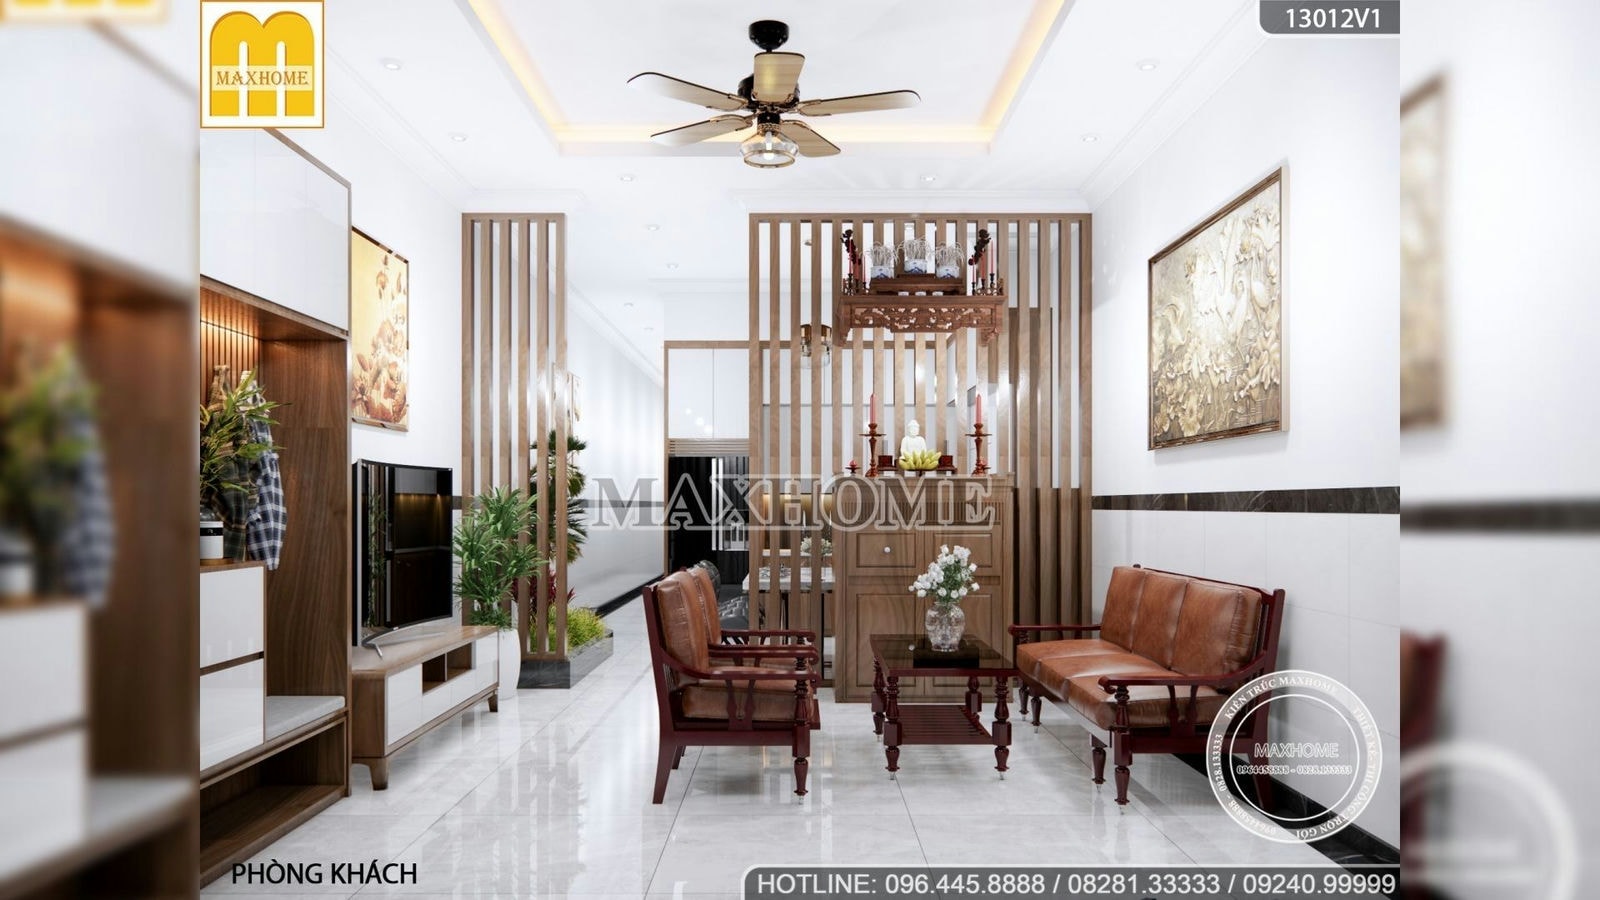 Mẫu nội thất mang phong cách hiện đại với mức giá chỉ từ 250 triệu